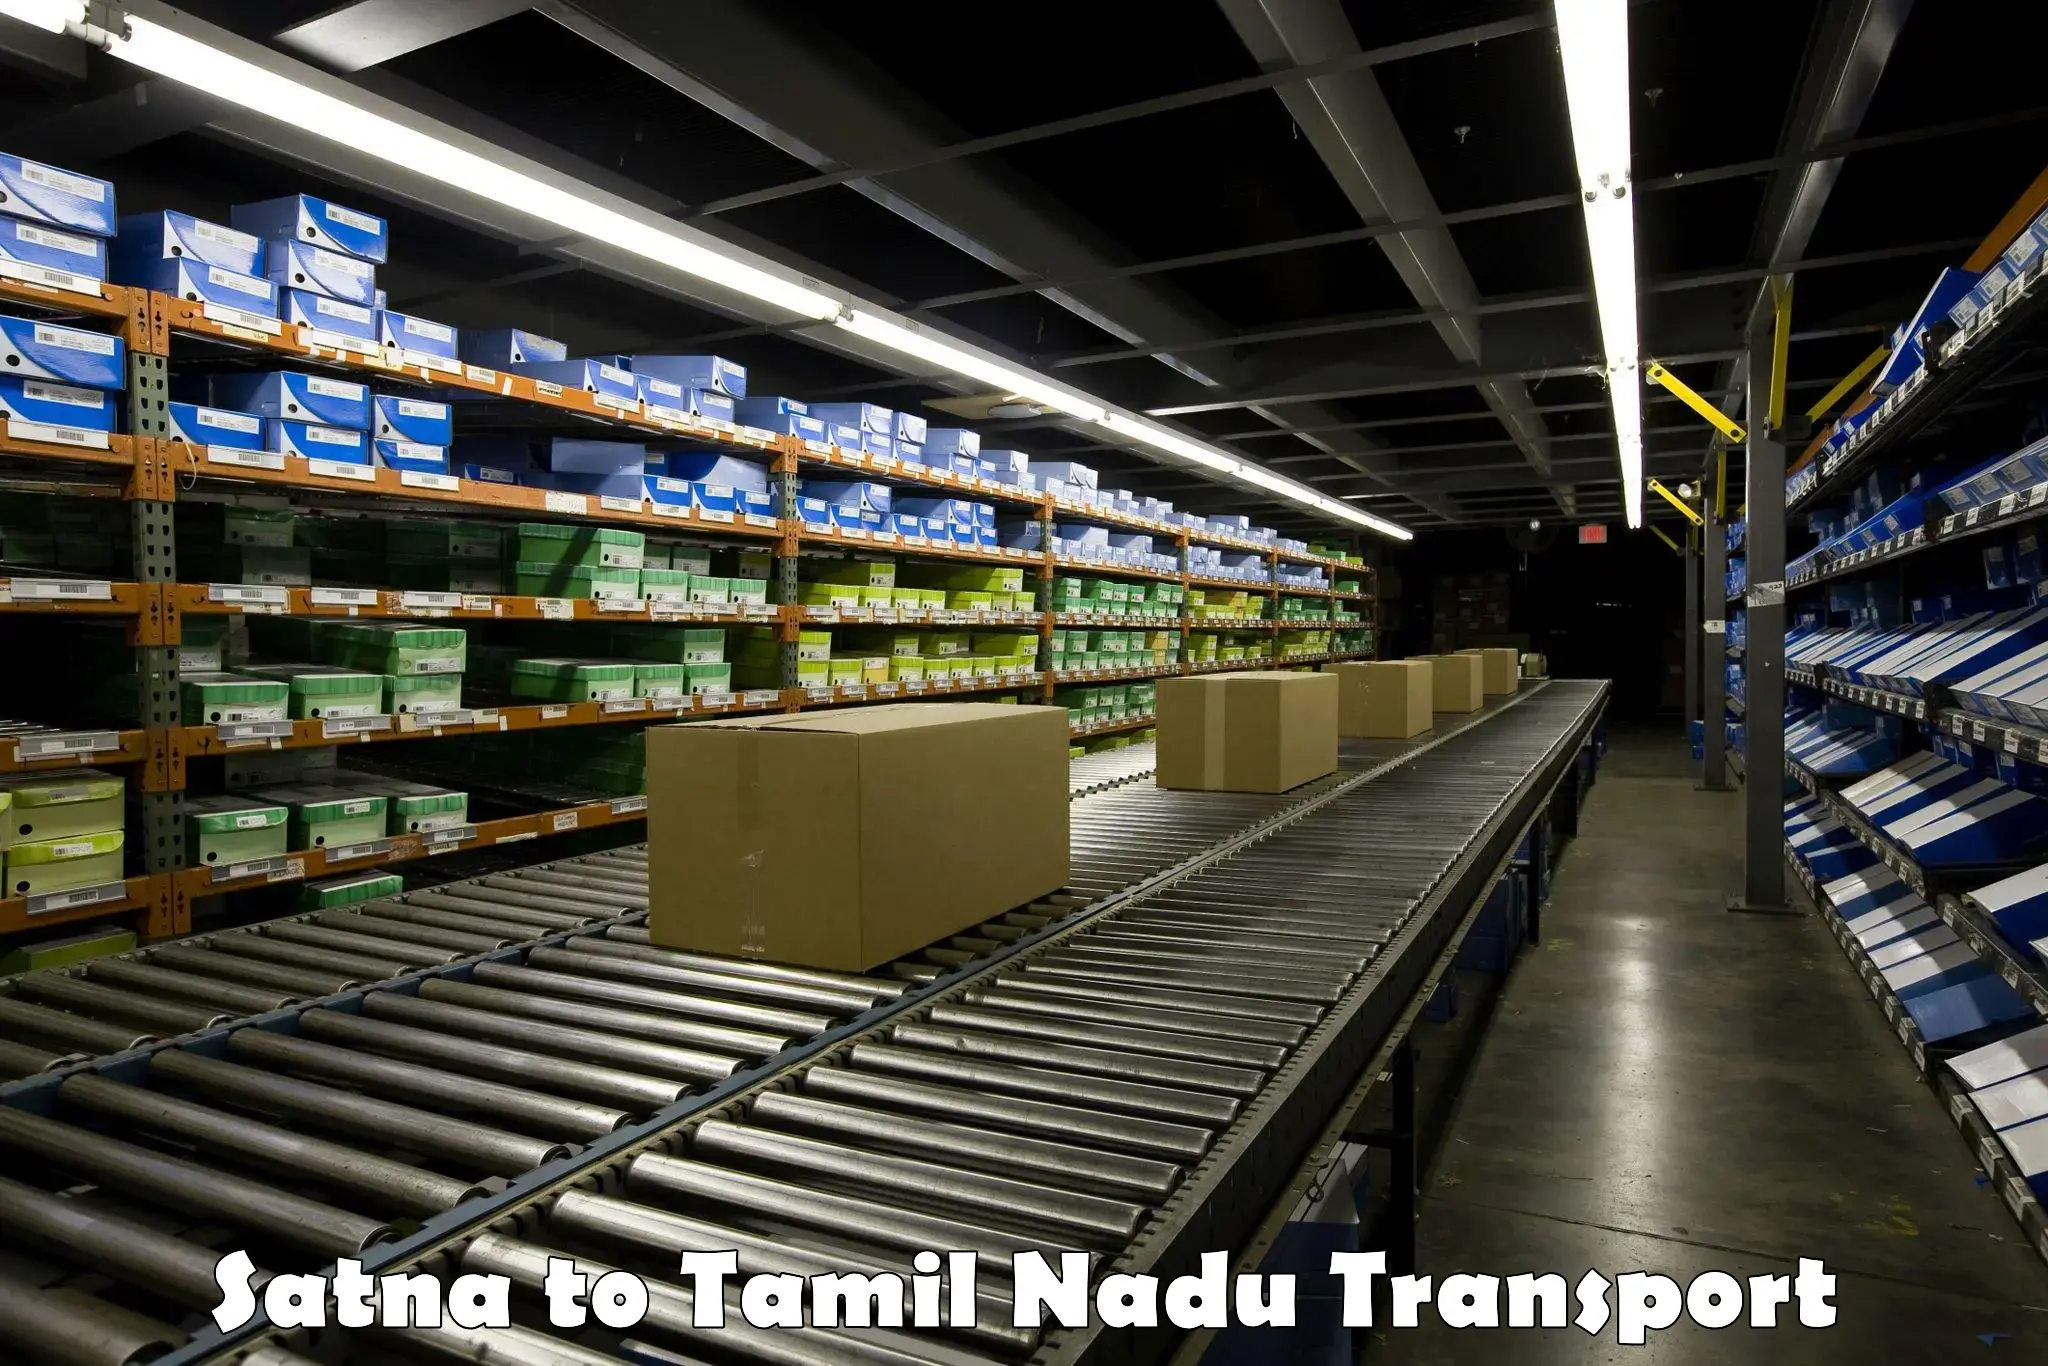 Container transport service Satna to Amrita Vishwa Vidyapeetham Coimbatore